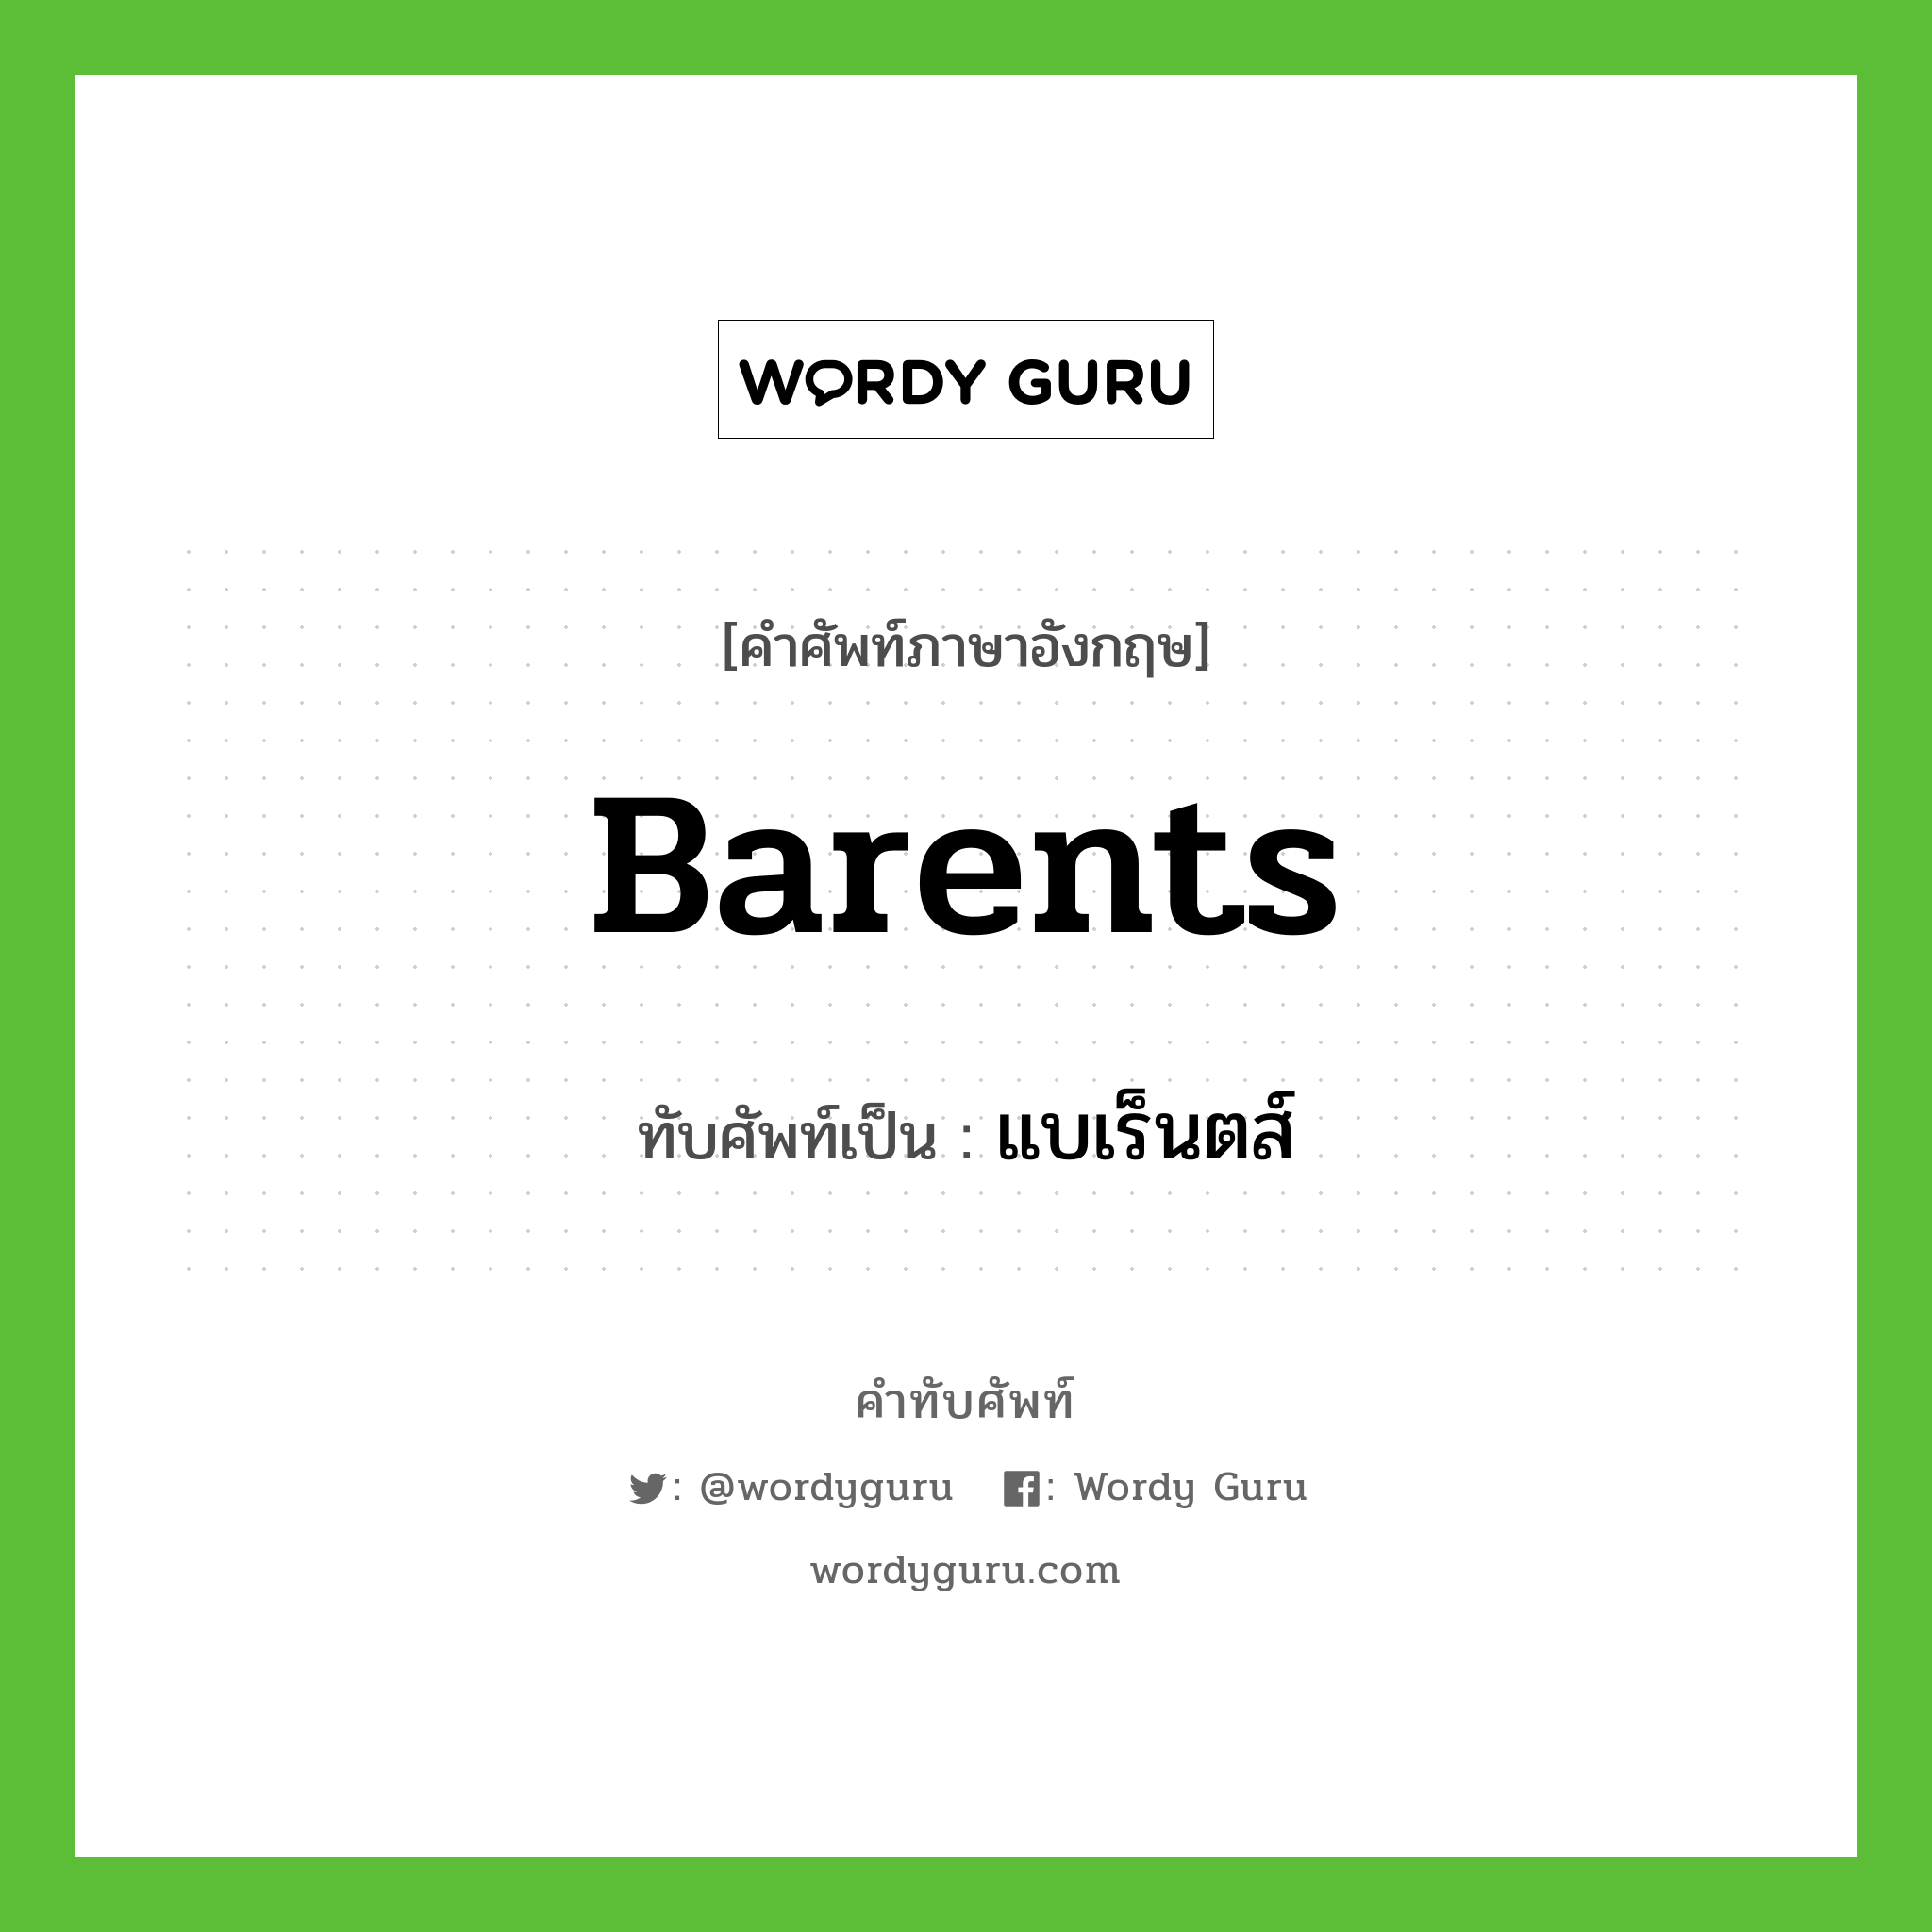 Barents เขียนเป็นคำไทยว่าอะไร?, คำศัพท์ภาษาอังกฤษ Barents ทับศัพท์เป็น แบเร็นตส์